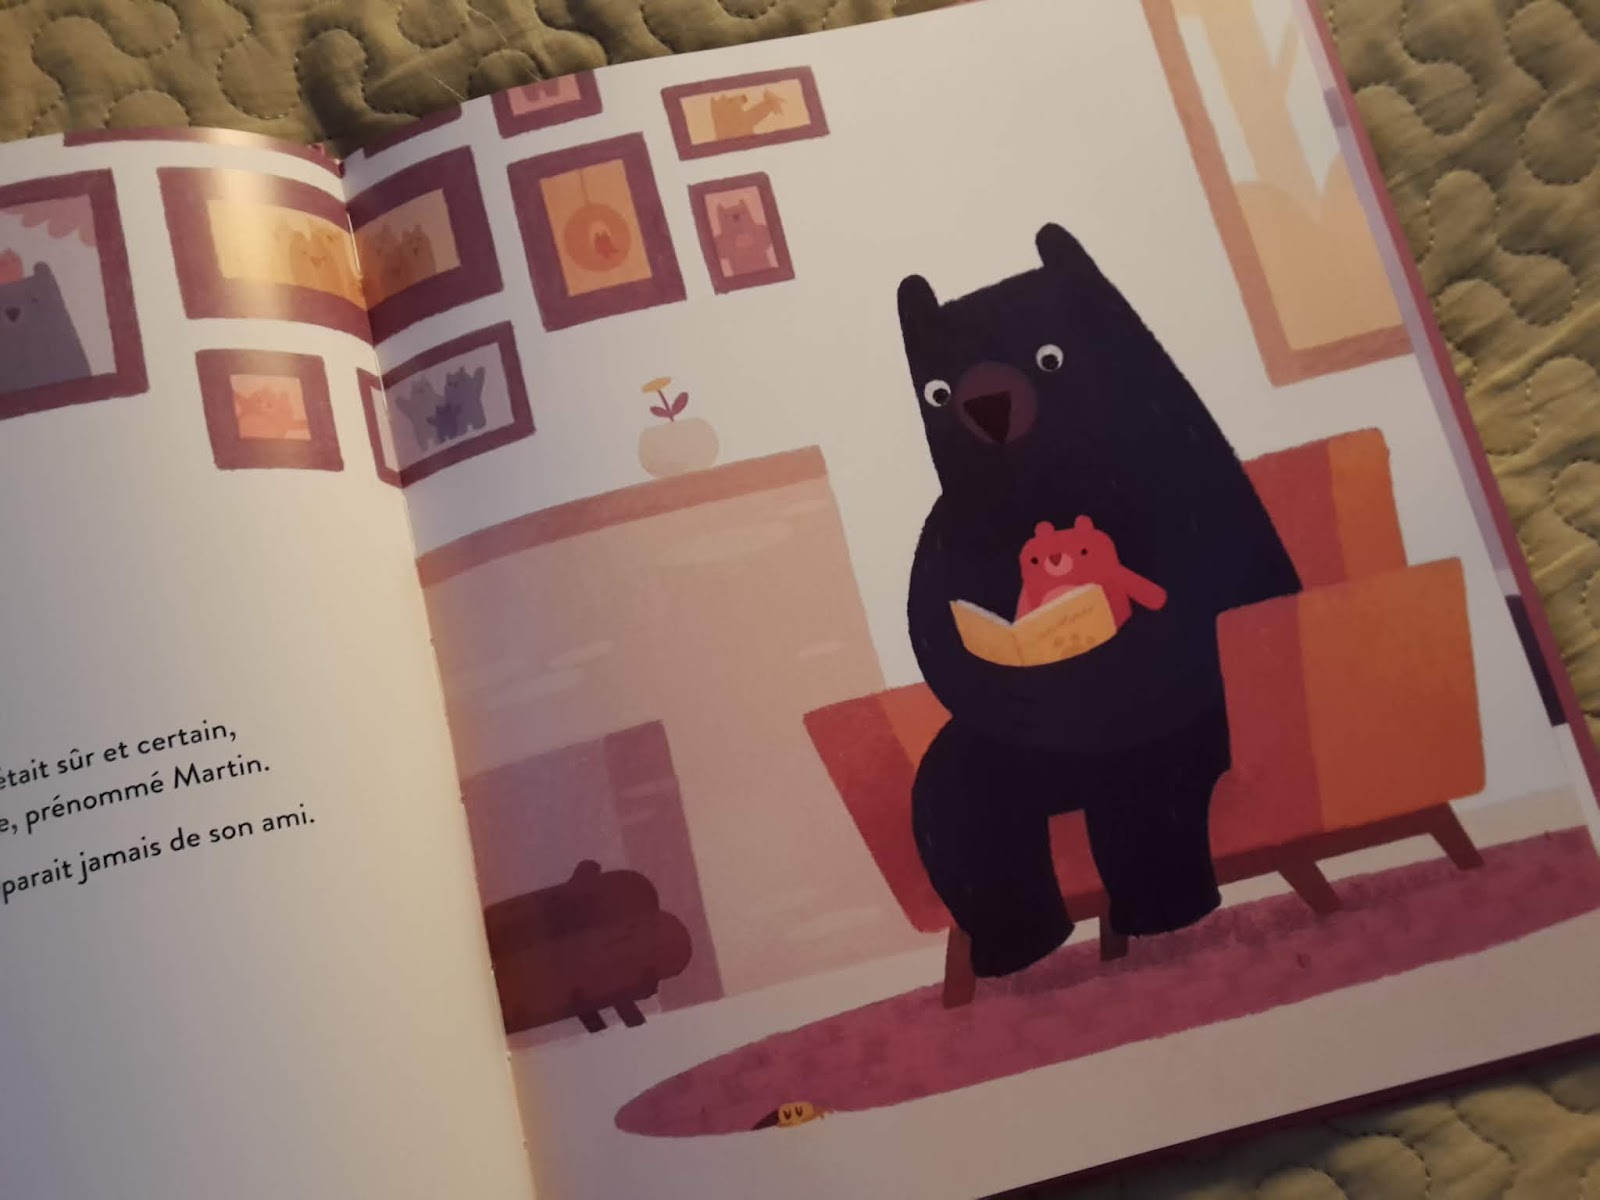 Le livre d'octobre : Valentin, L'ours qui était sûr et certain, de Jacob Grant